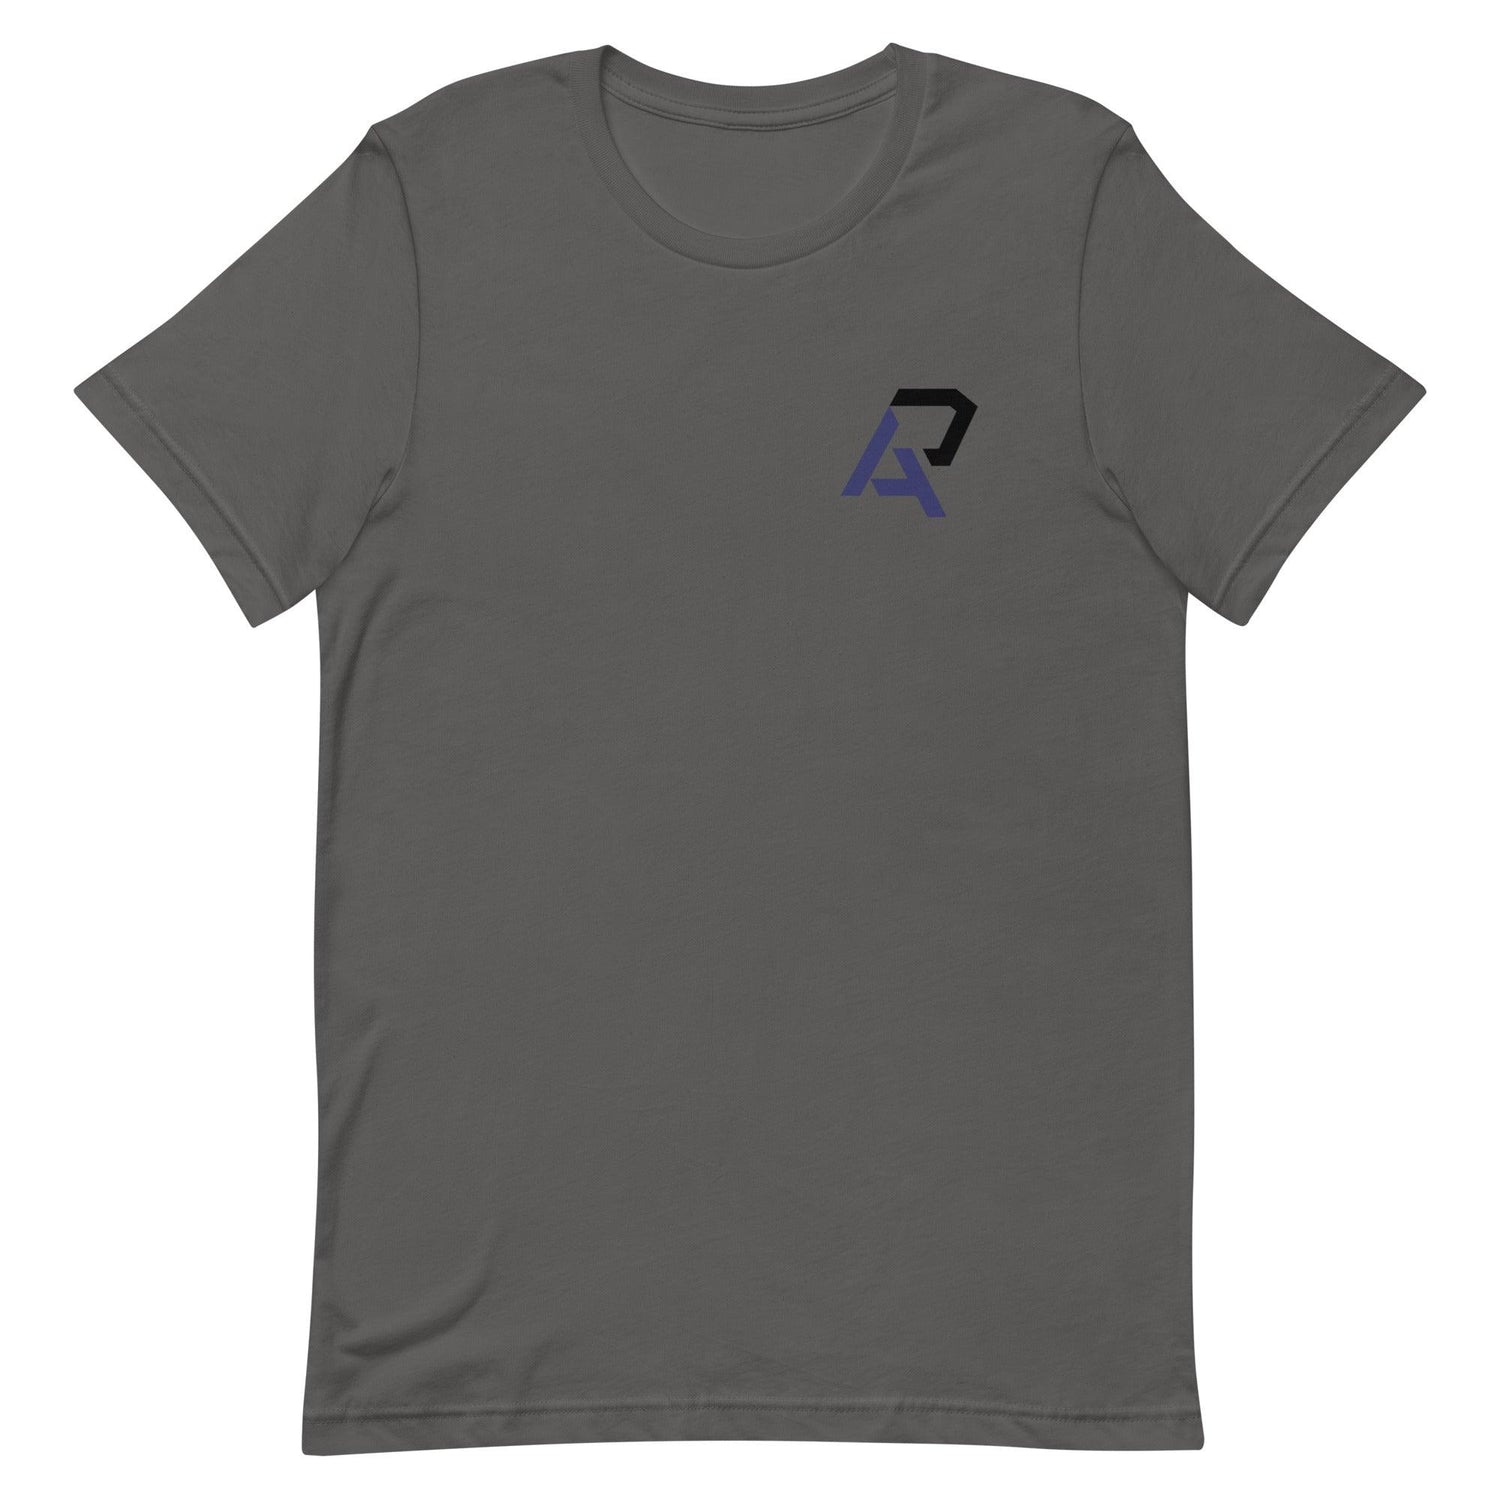 Alan Perdomo "Essential" t-shirt - Fan Arch